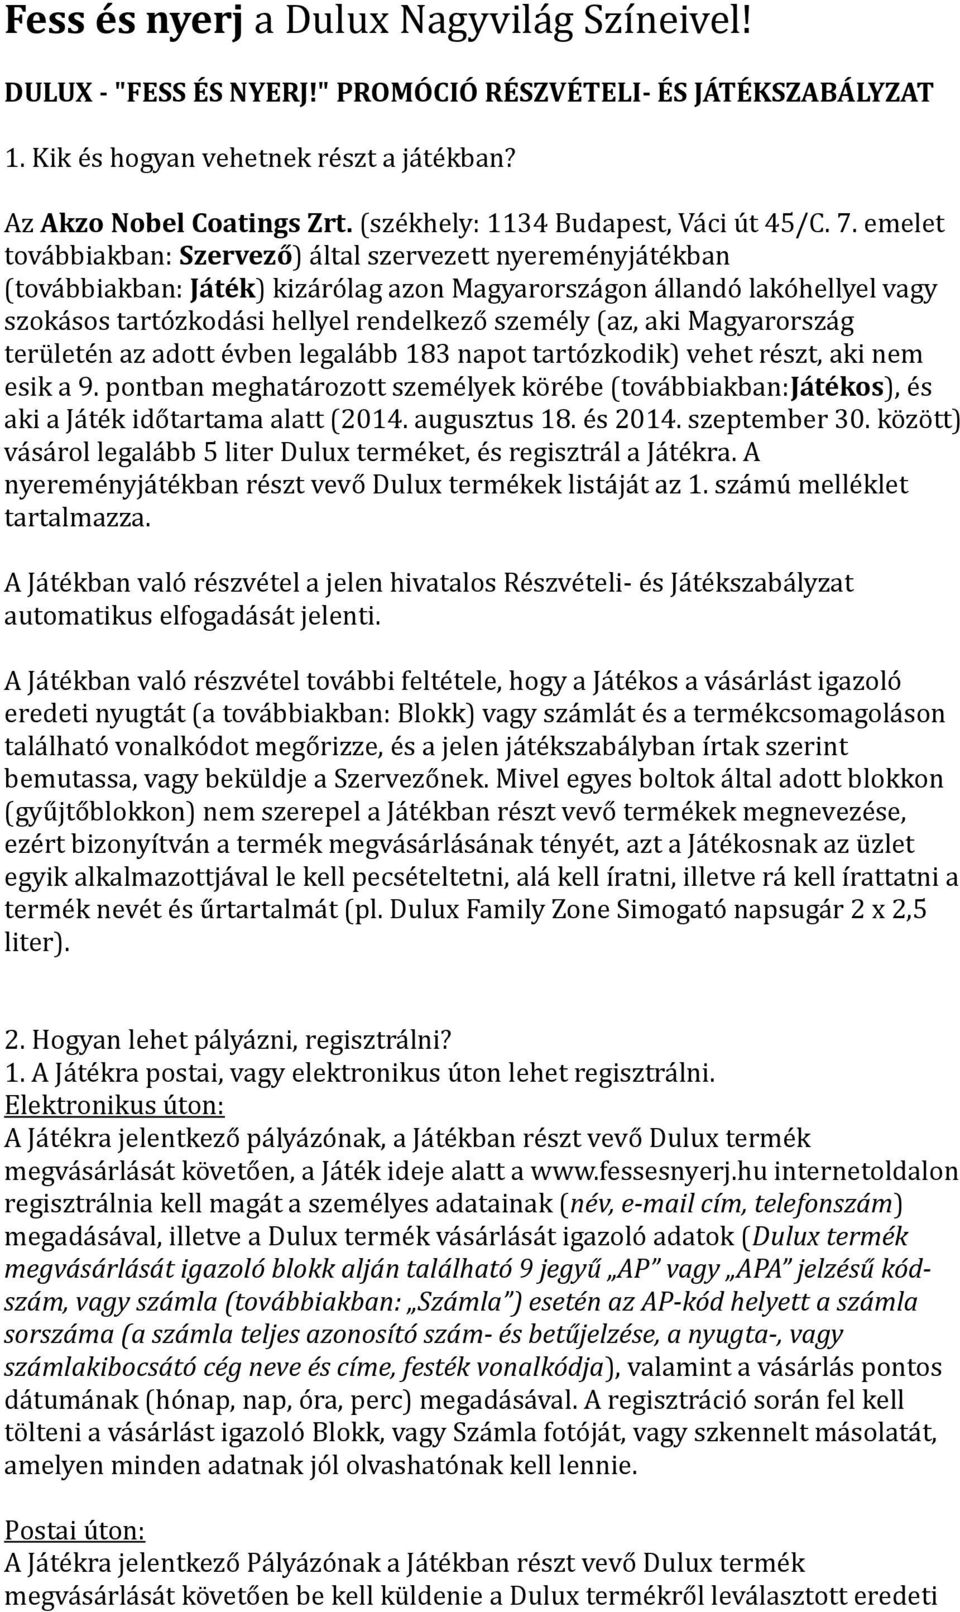 Fess és nyerj a Dulux Nagyvilág Színeivel! - PDF Free Download